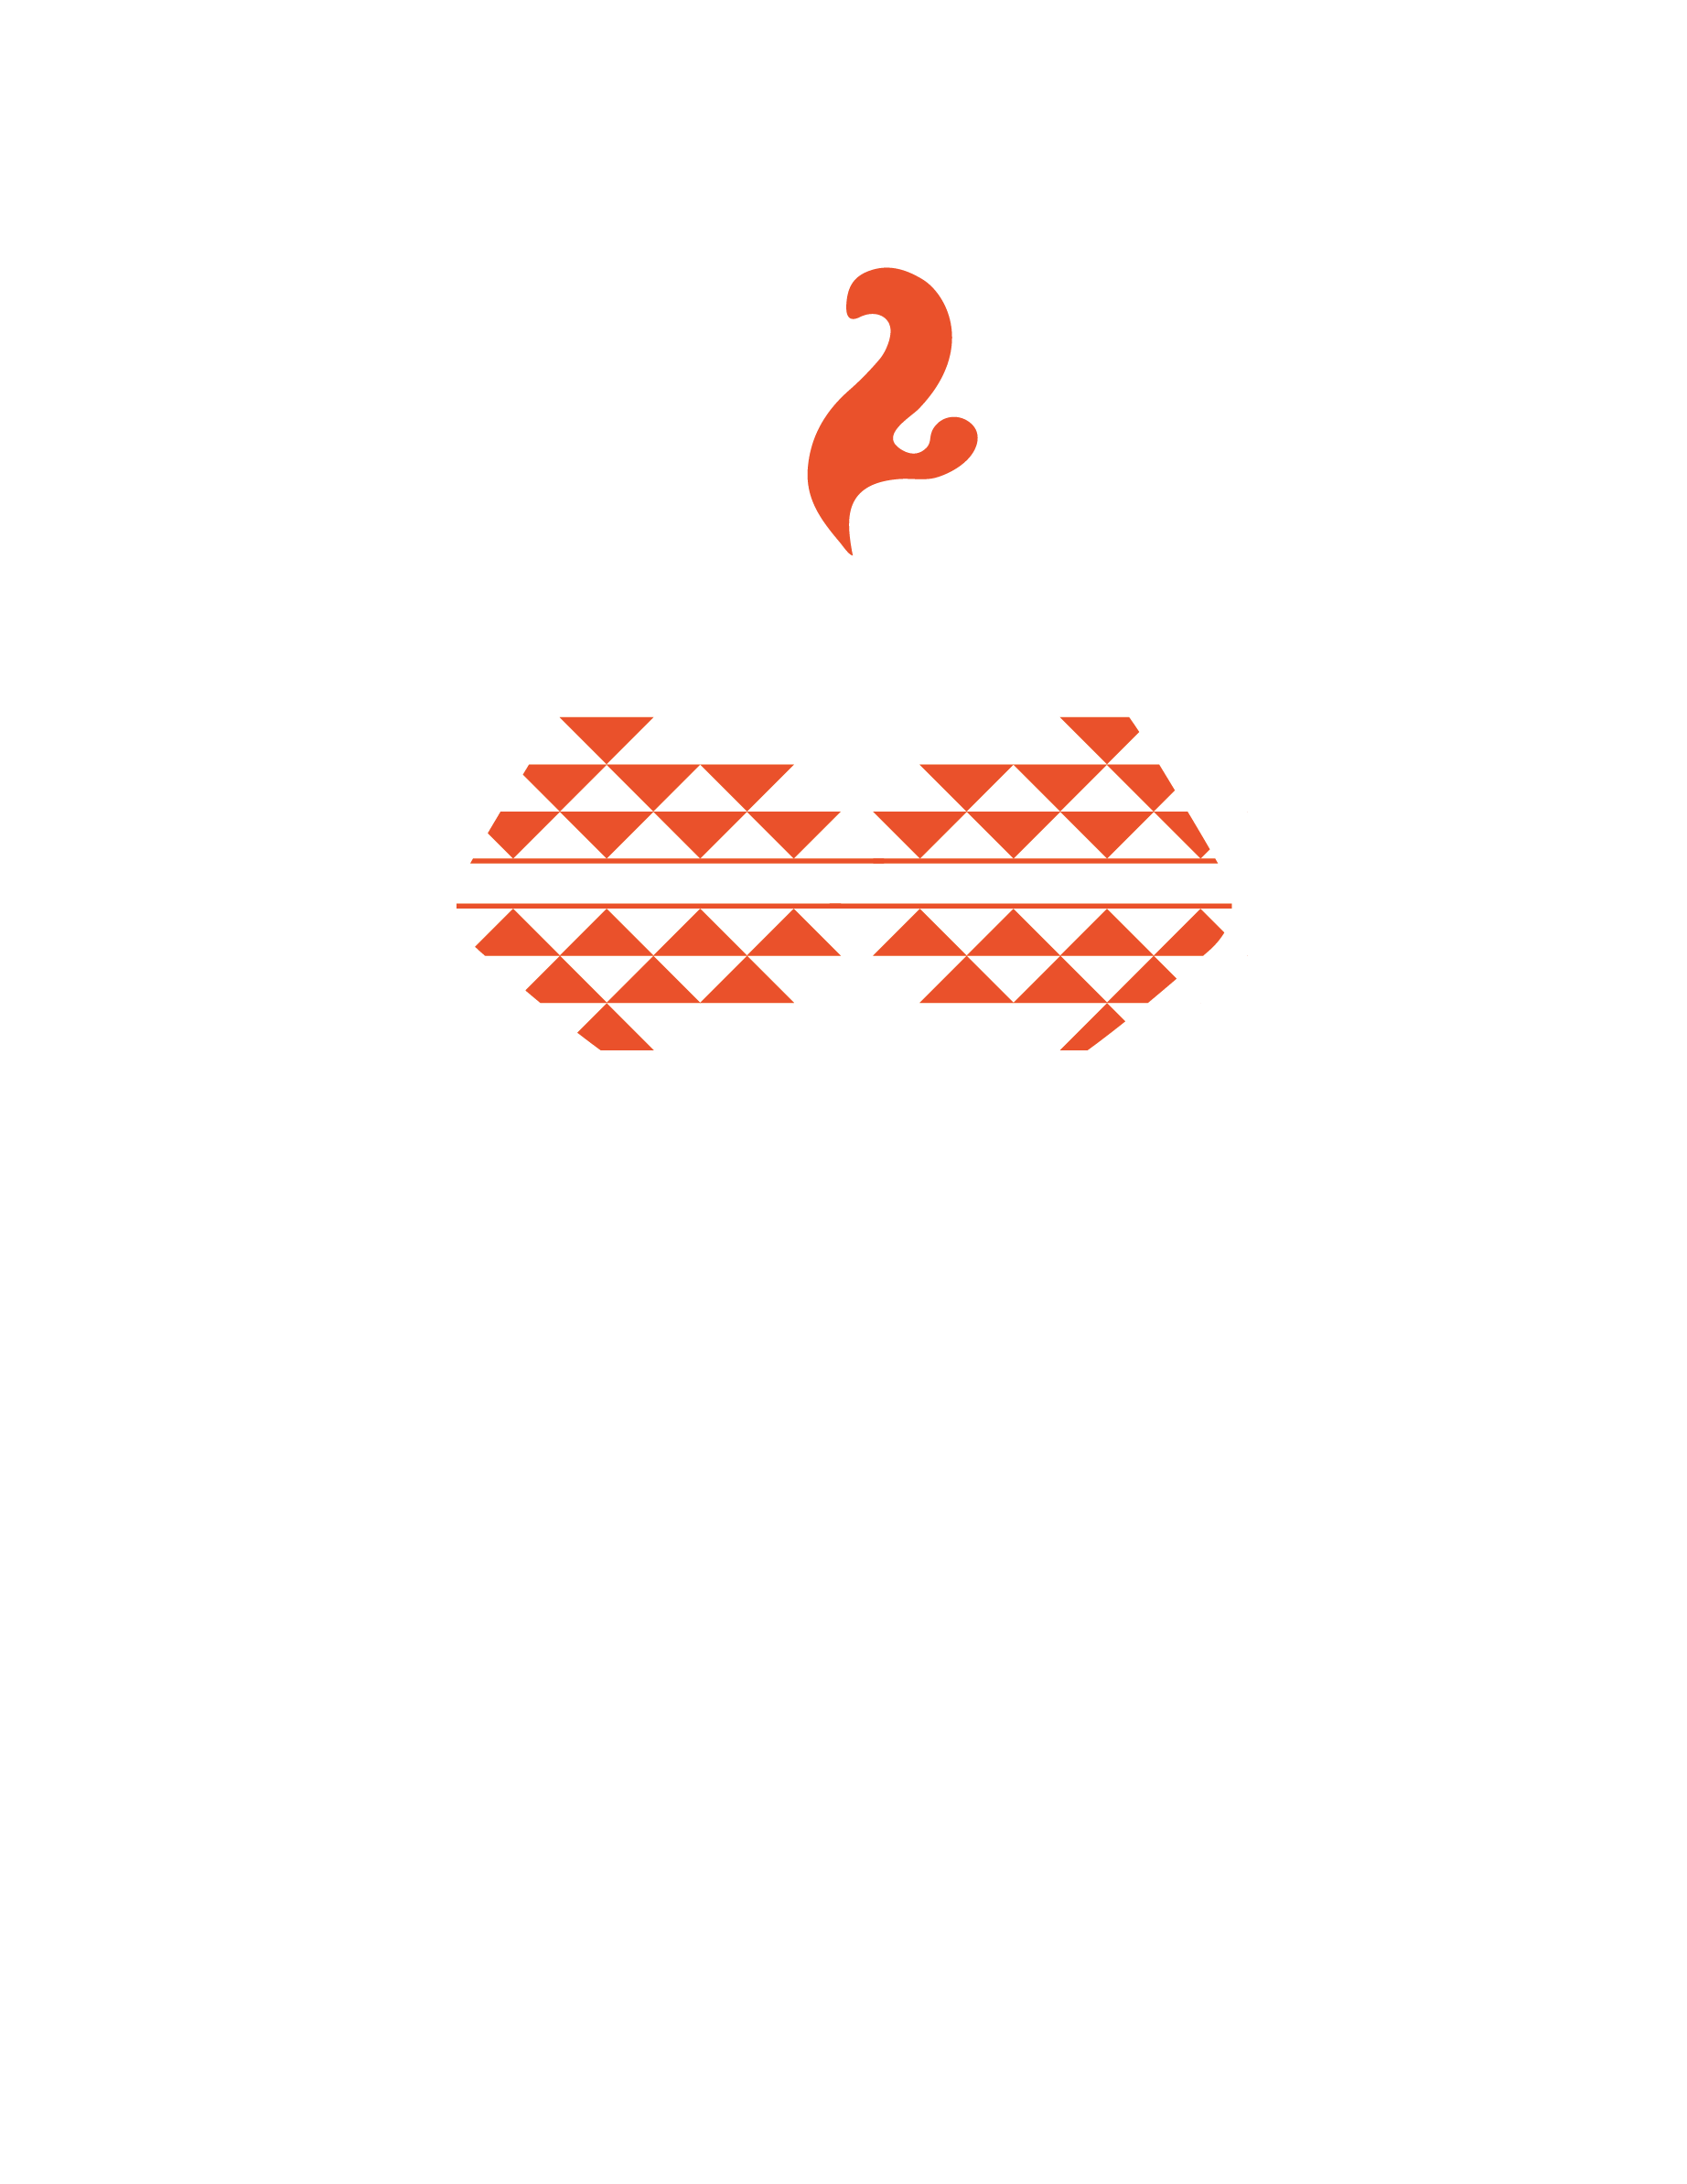 mdozn.com